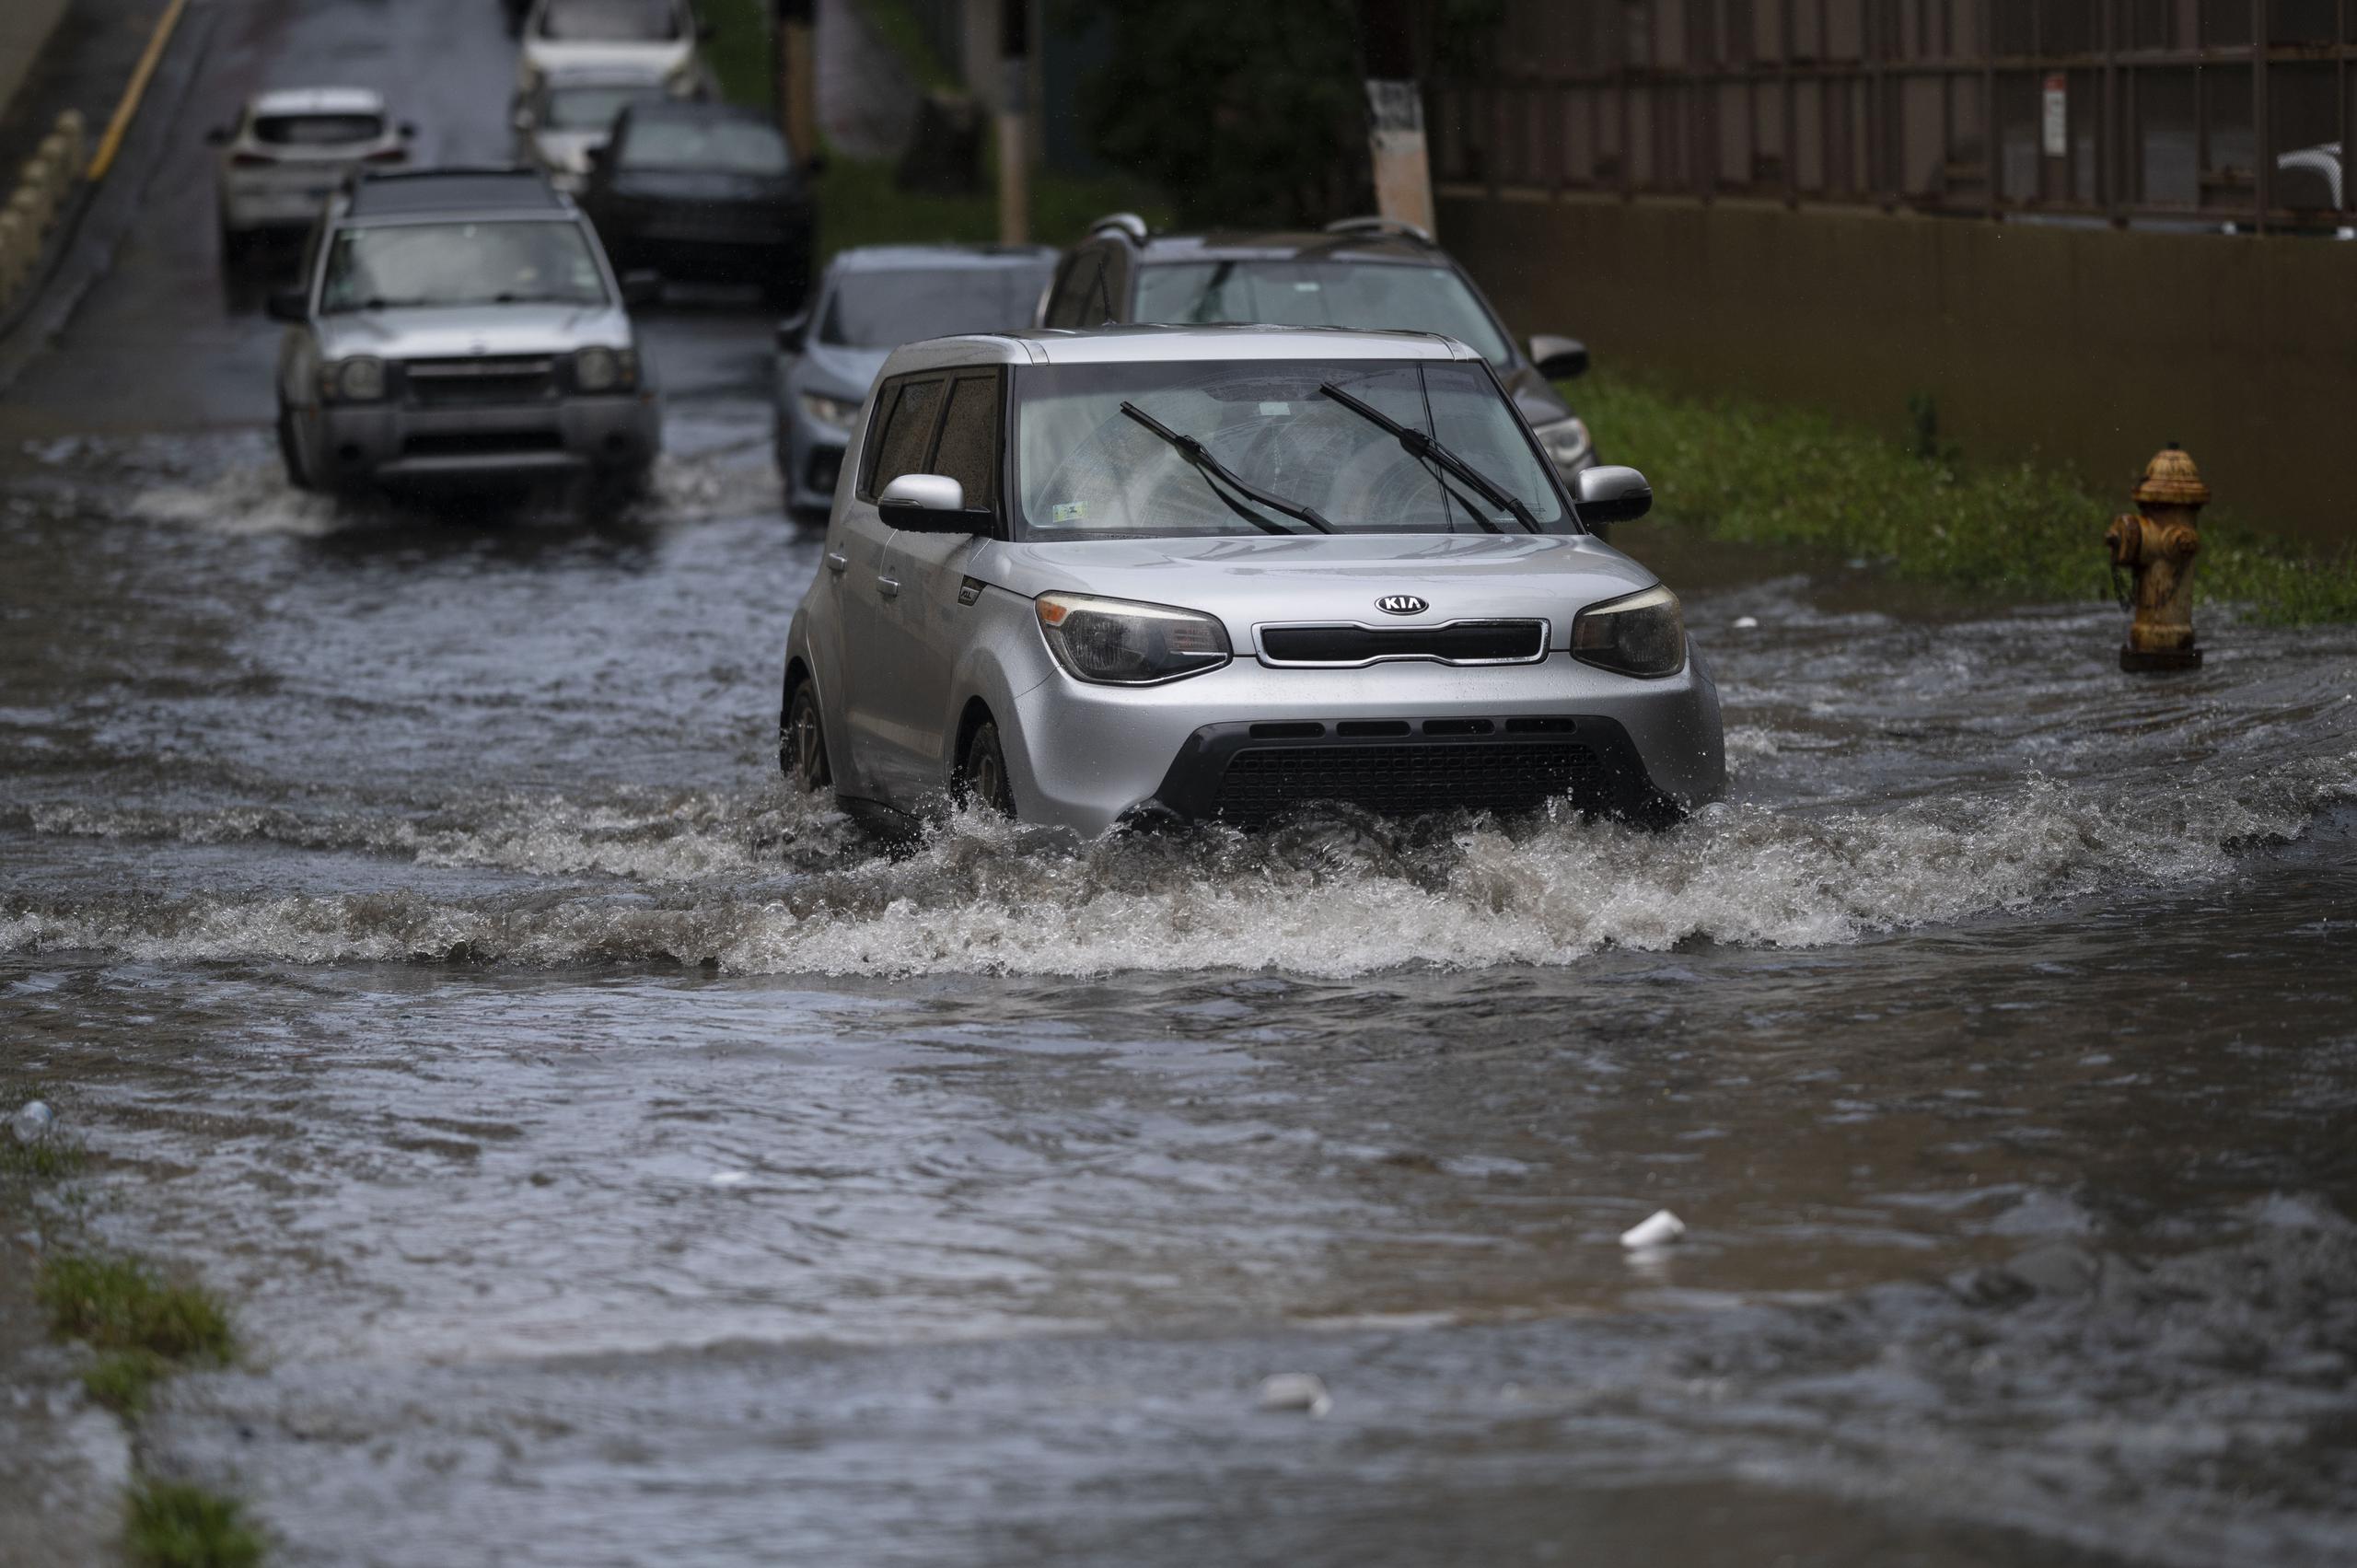 El impacto de la precipitación en la zona oeste ha provocado que varias estructuras a lo largo del río Culebrinas en Moca se encuentren afectadas por la acumulación de agua, informó el Servicio Nacional de Meteorología.